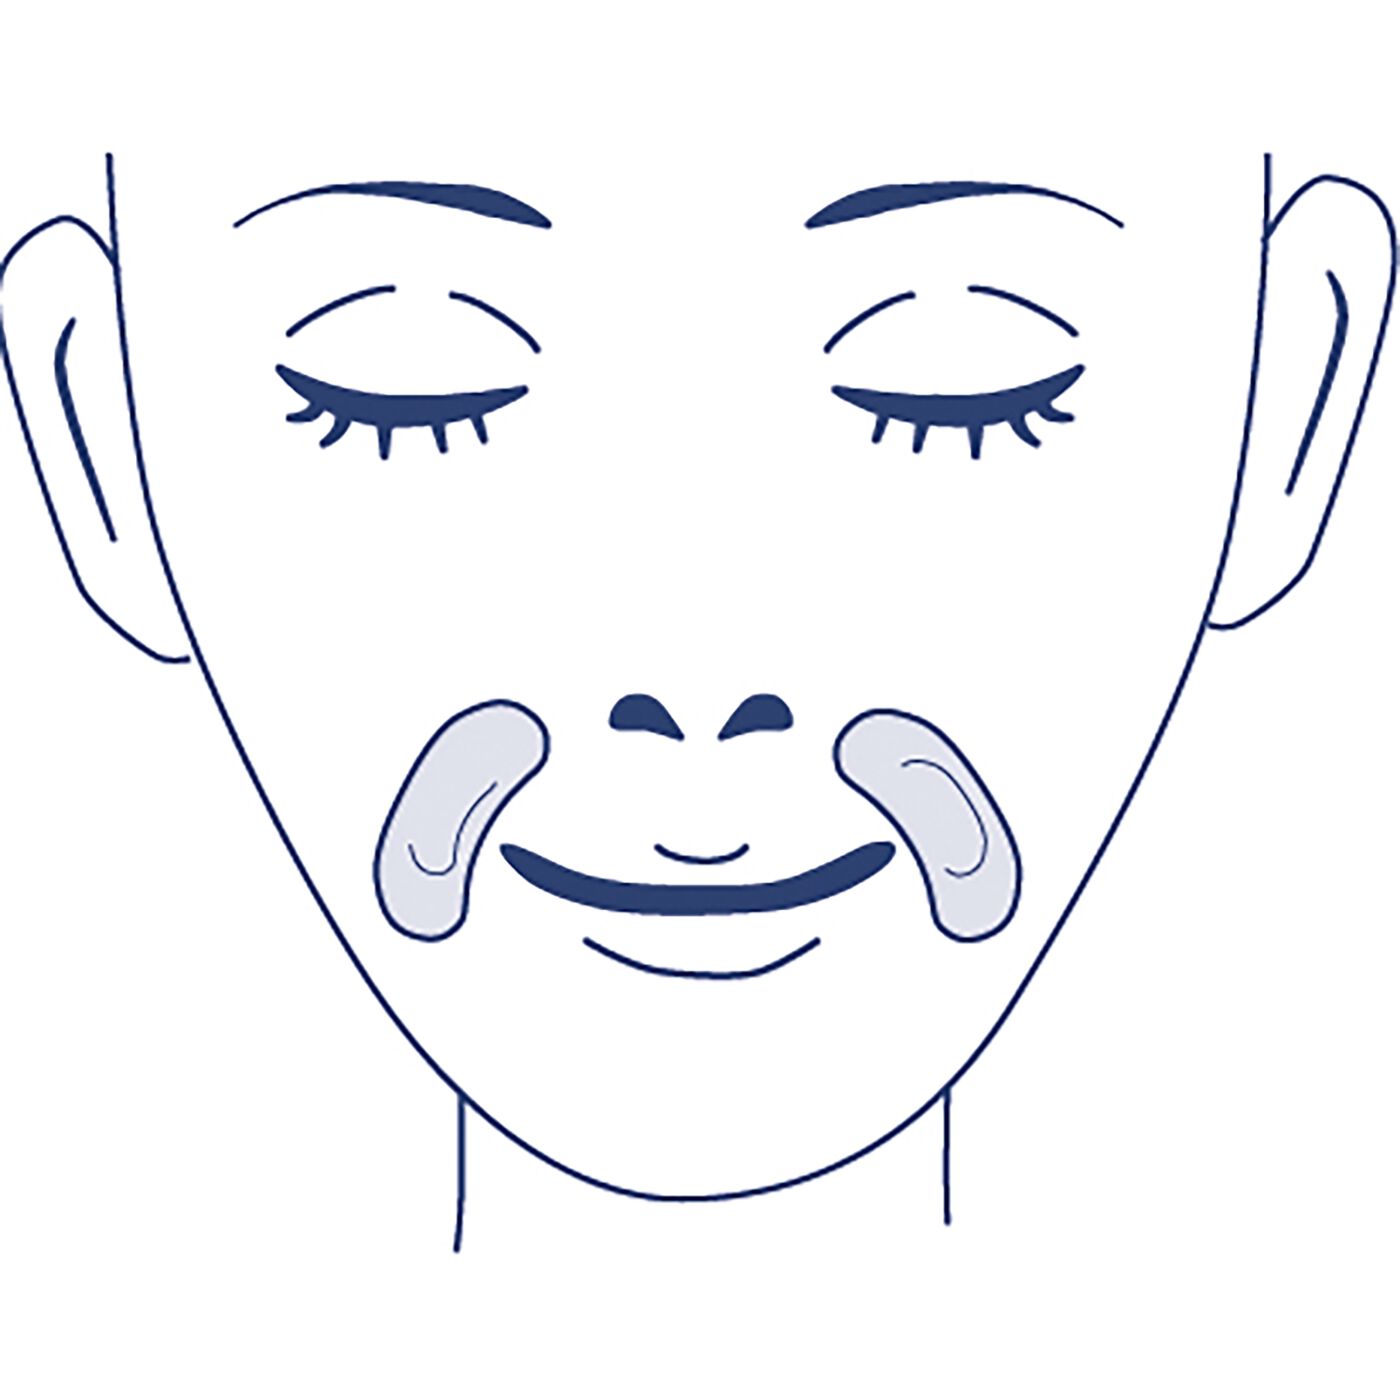 BEAUTY PROJECT|クオニス　ダーマフィラー〈ヒアルロン酸マイクロニードル〉4セット|口もとは鼻から口もとに沿うように軽くおきます。